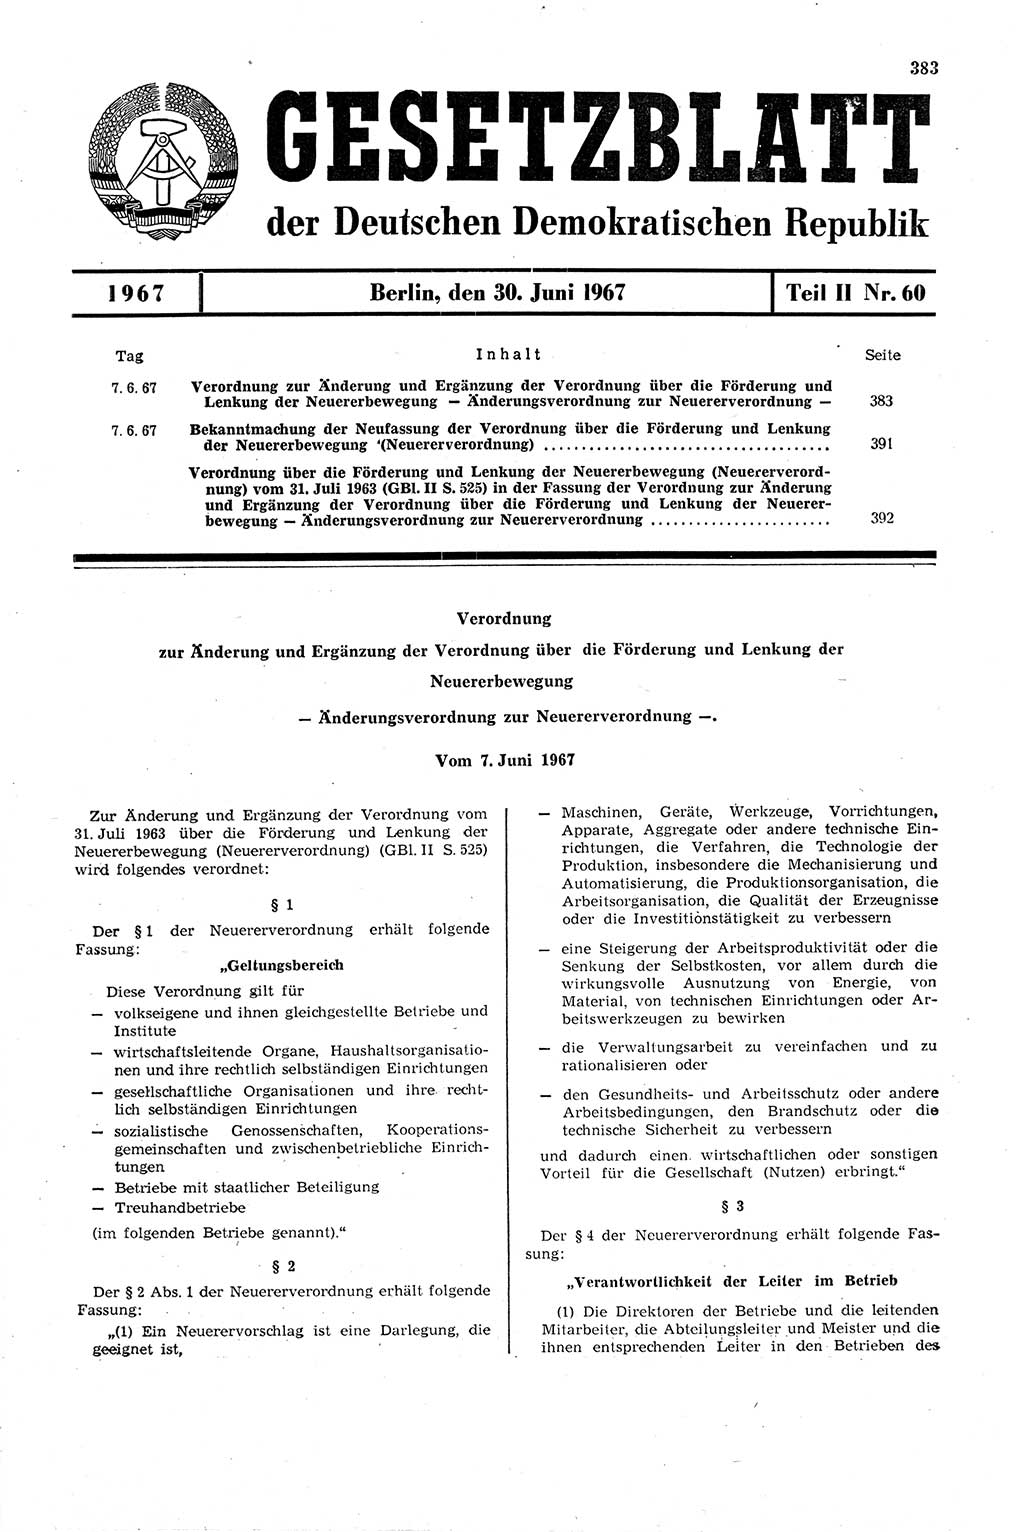 Gesetzblatt (GBl.) der Deutschen Demokratischen Republik (DDR) Teil ⅠⅠ 1967, Seite 383 (GBl. DDR ⅠⅠ 1967, S. 383)